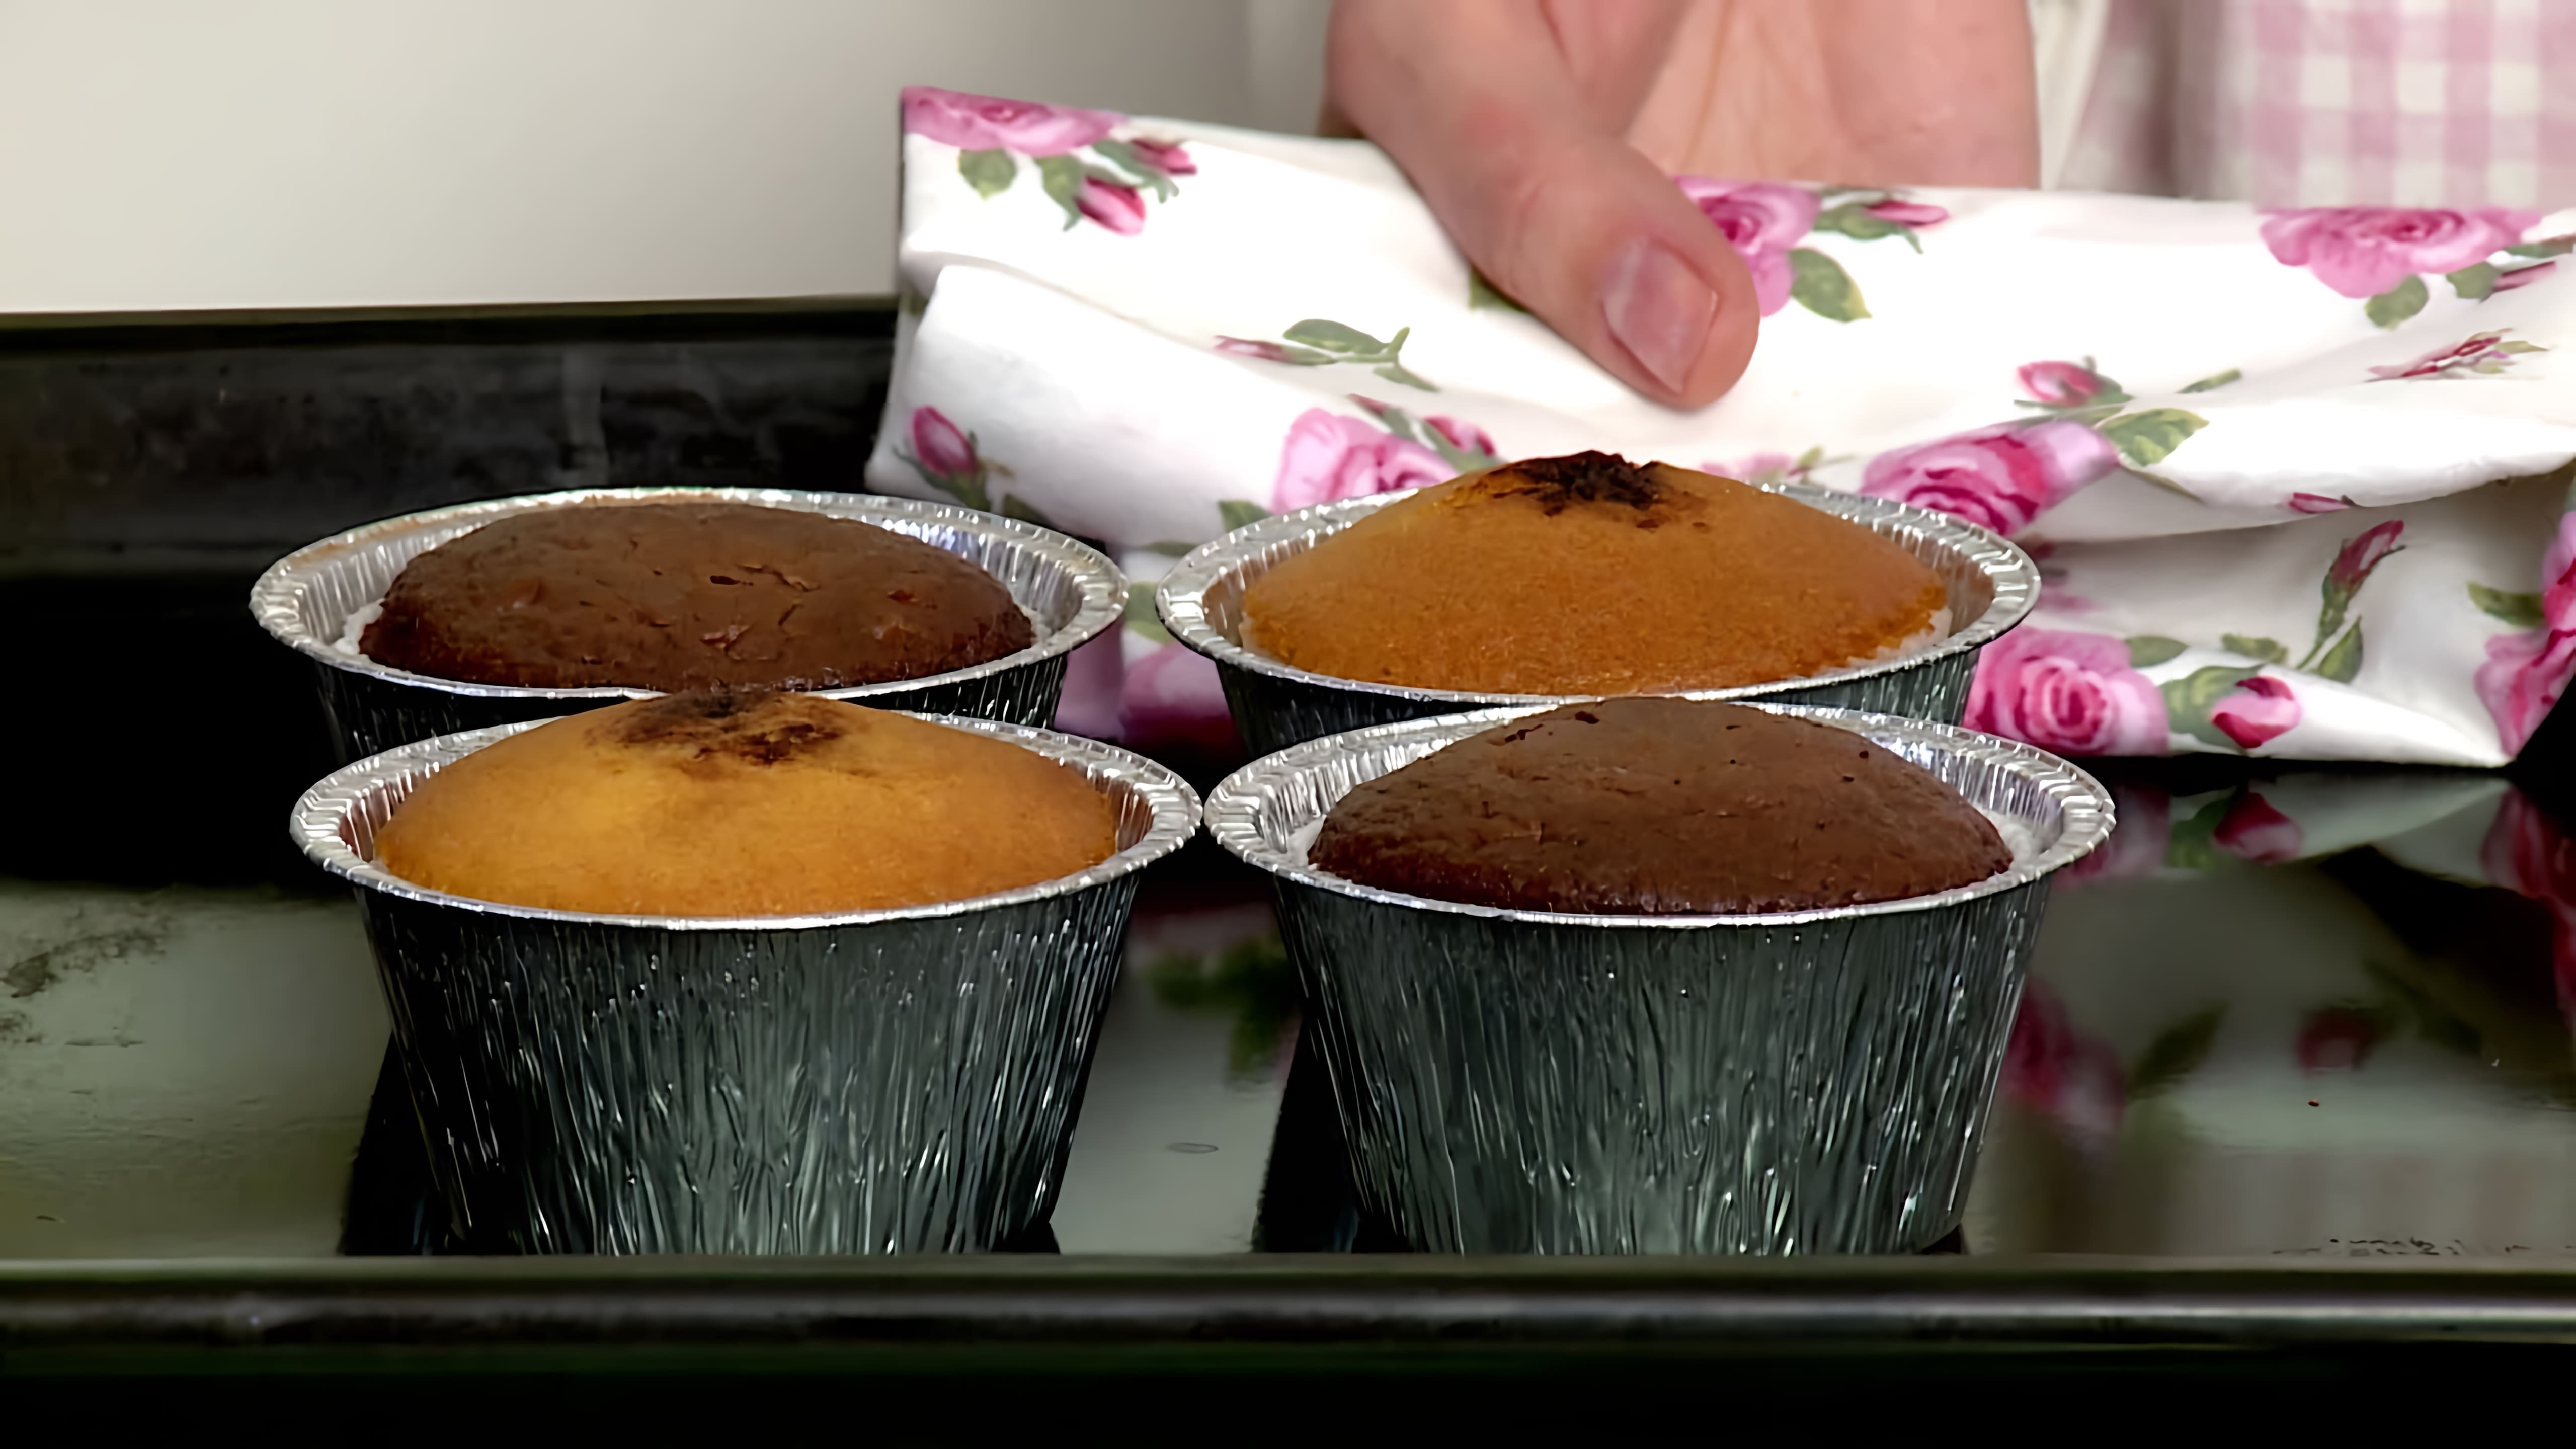 В этом видео демонстрируется рецепт приготовления капкейков - маленьких кексов, украшенных шапкой из крема